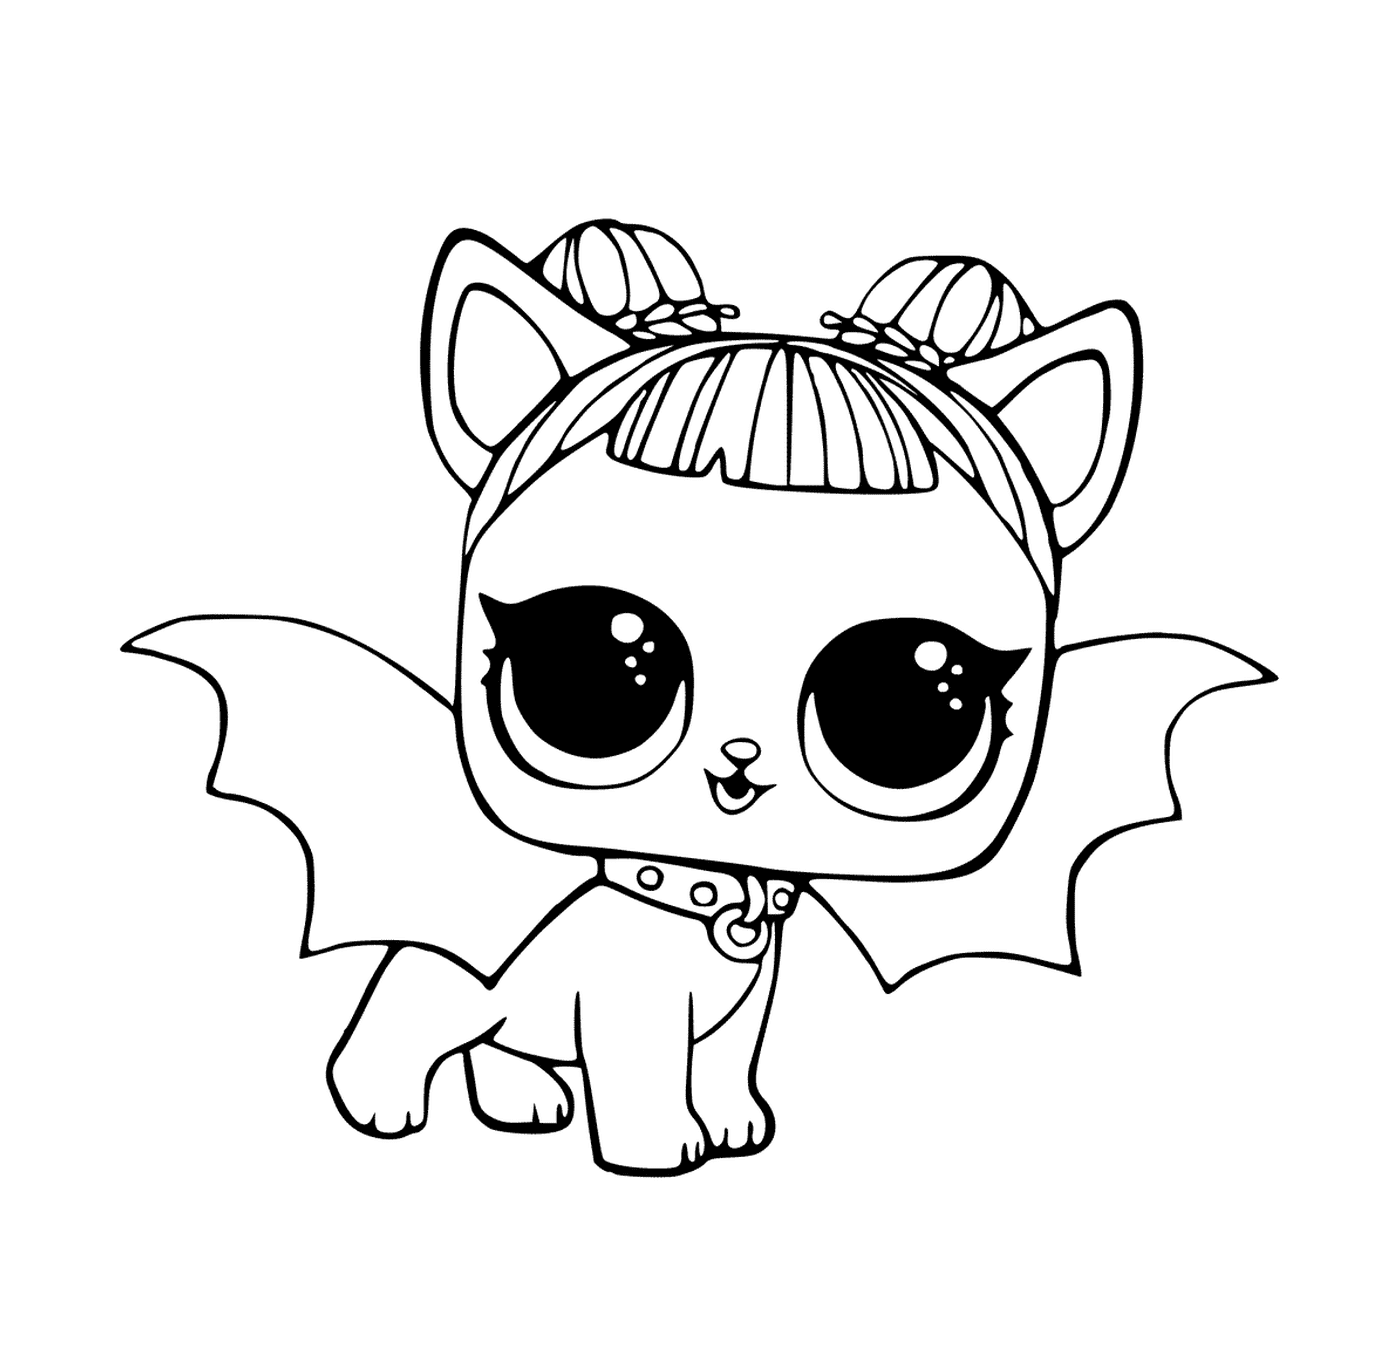  Cat with a bat costume 